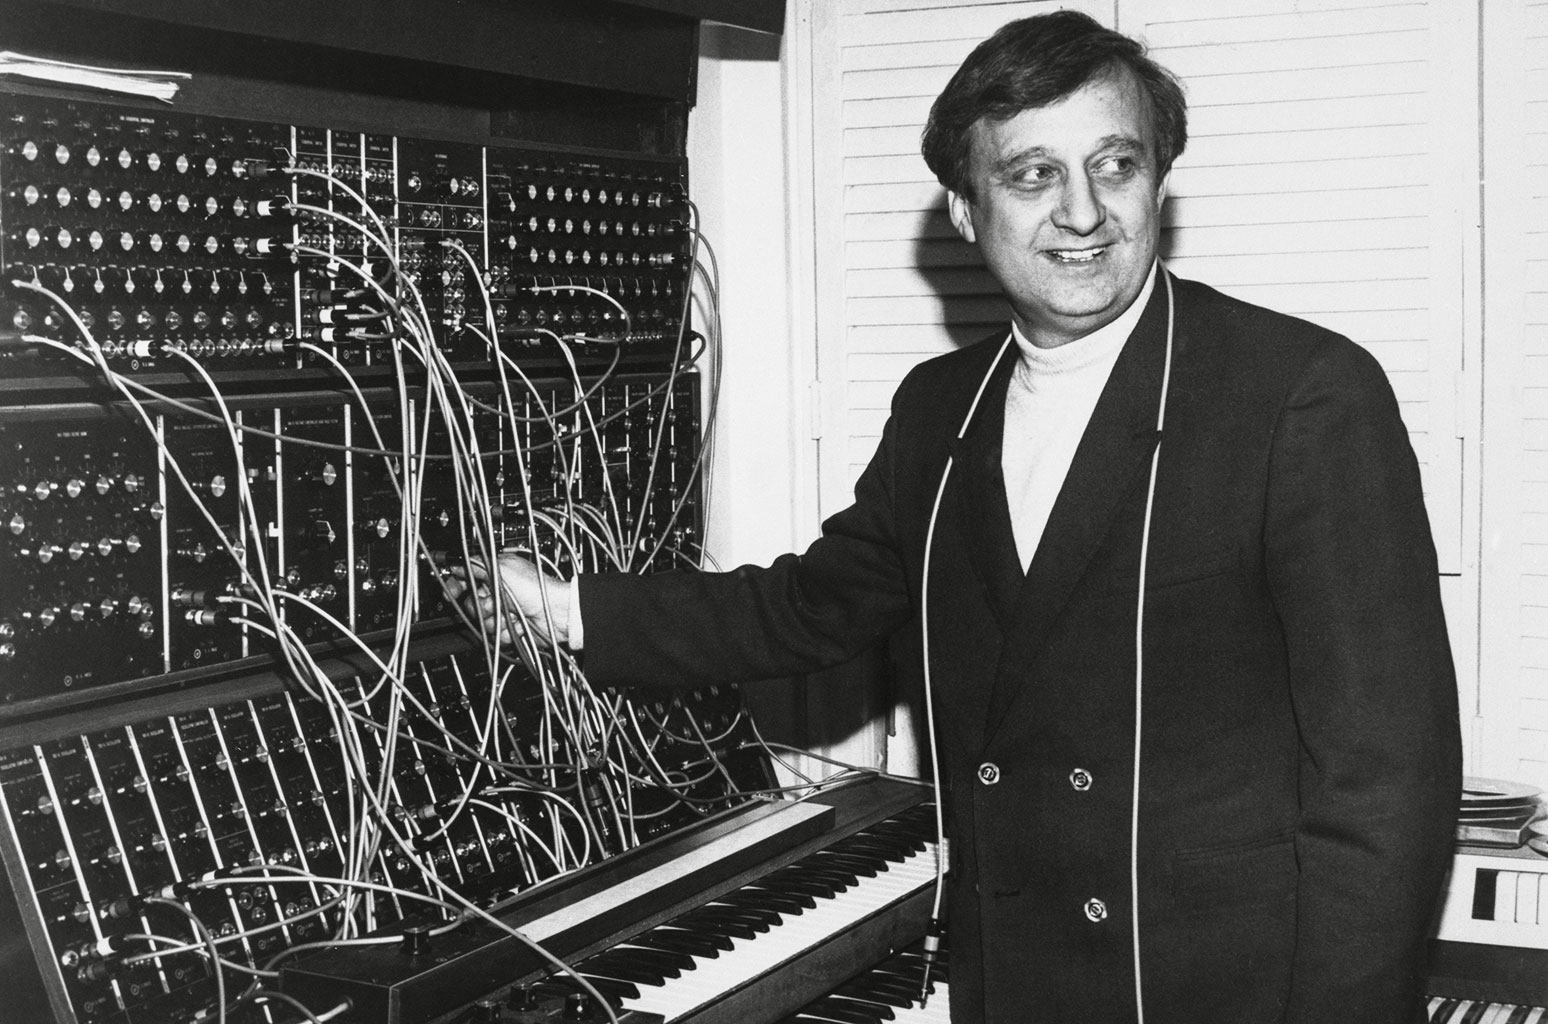 Gershon Kingsley, Moog Synthesizer Pioneer, Dies at 97 - www.billboard.com - New York